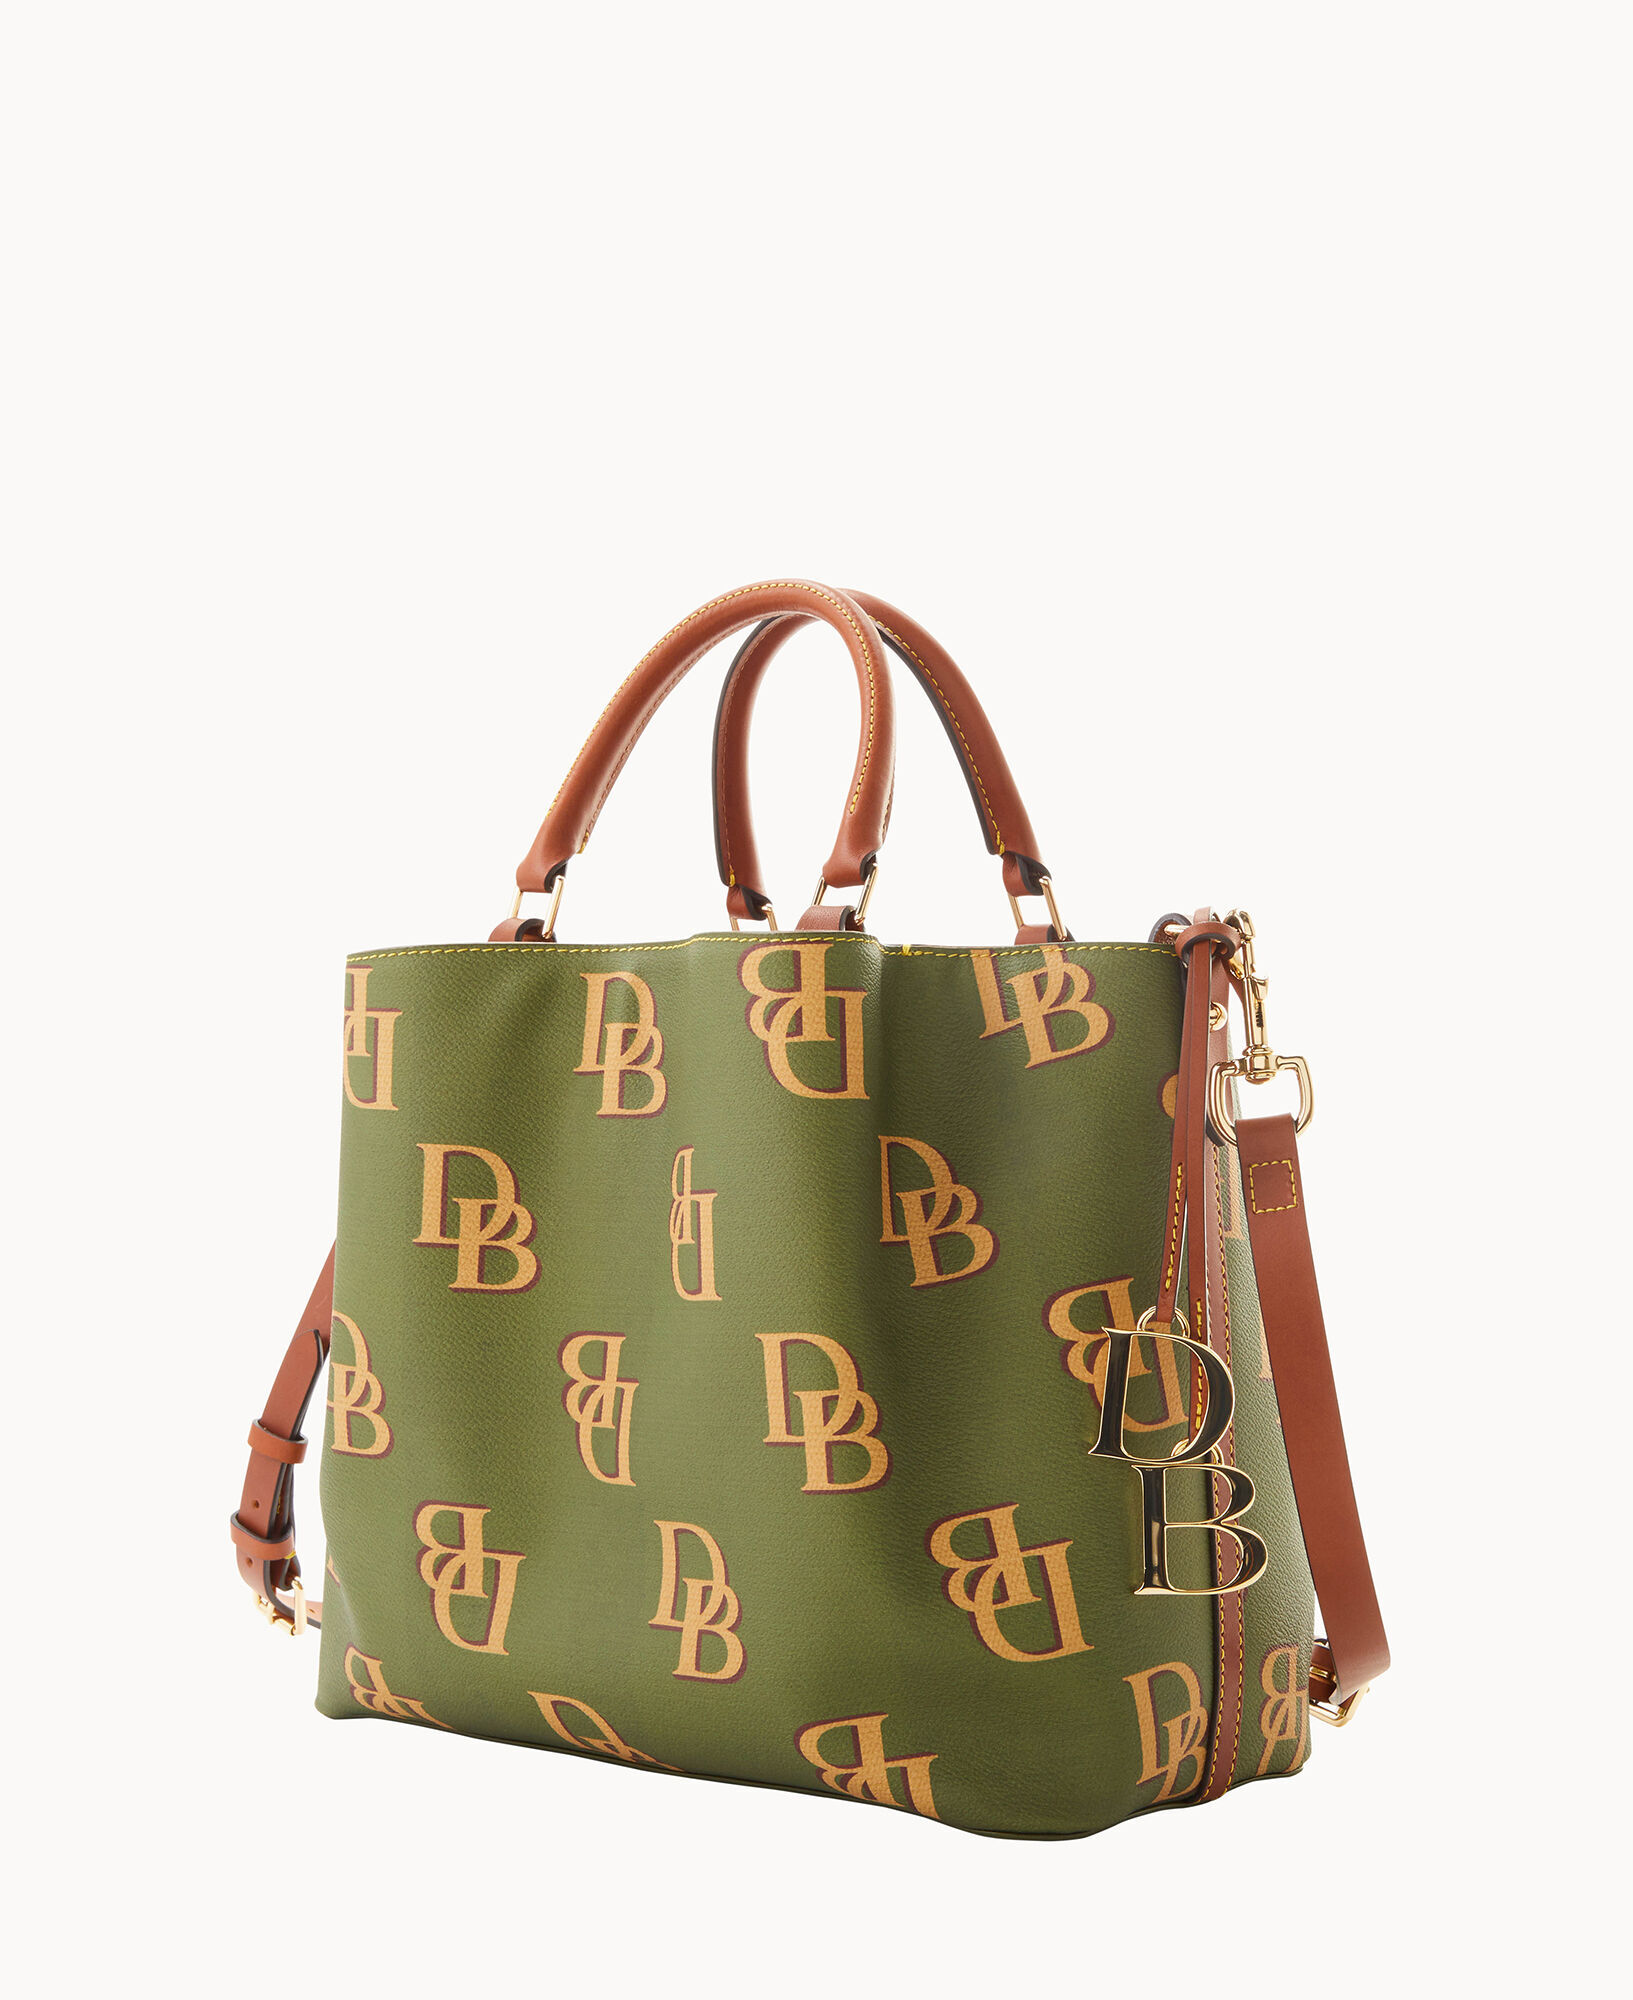 Dooney & Bourke Monogram Large Sac Shoulder Bag